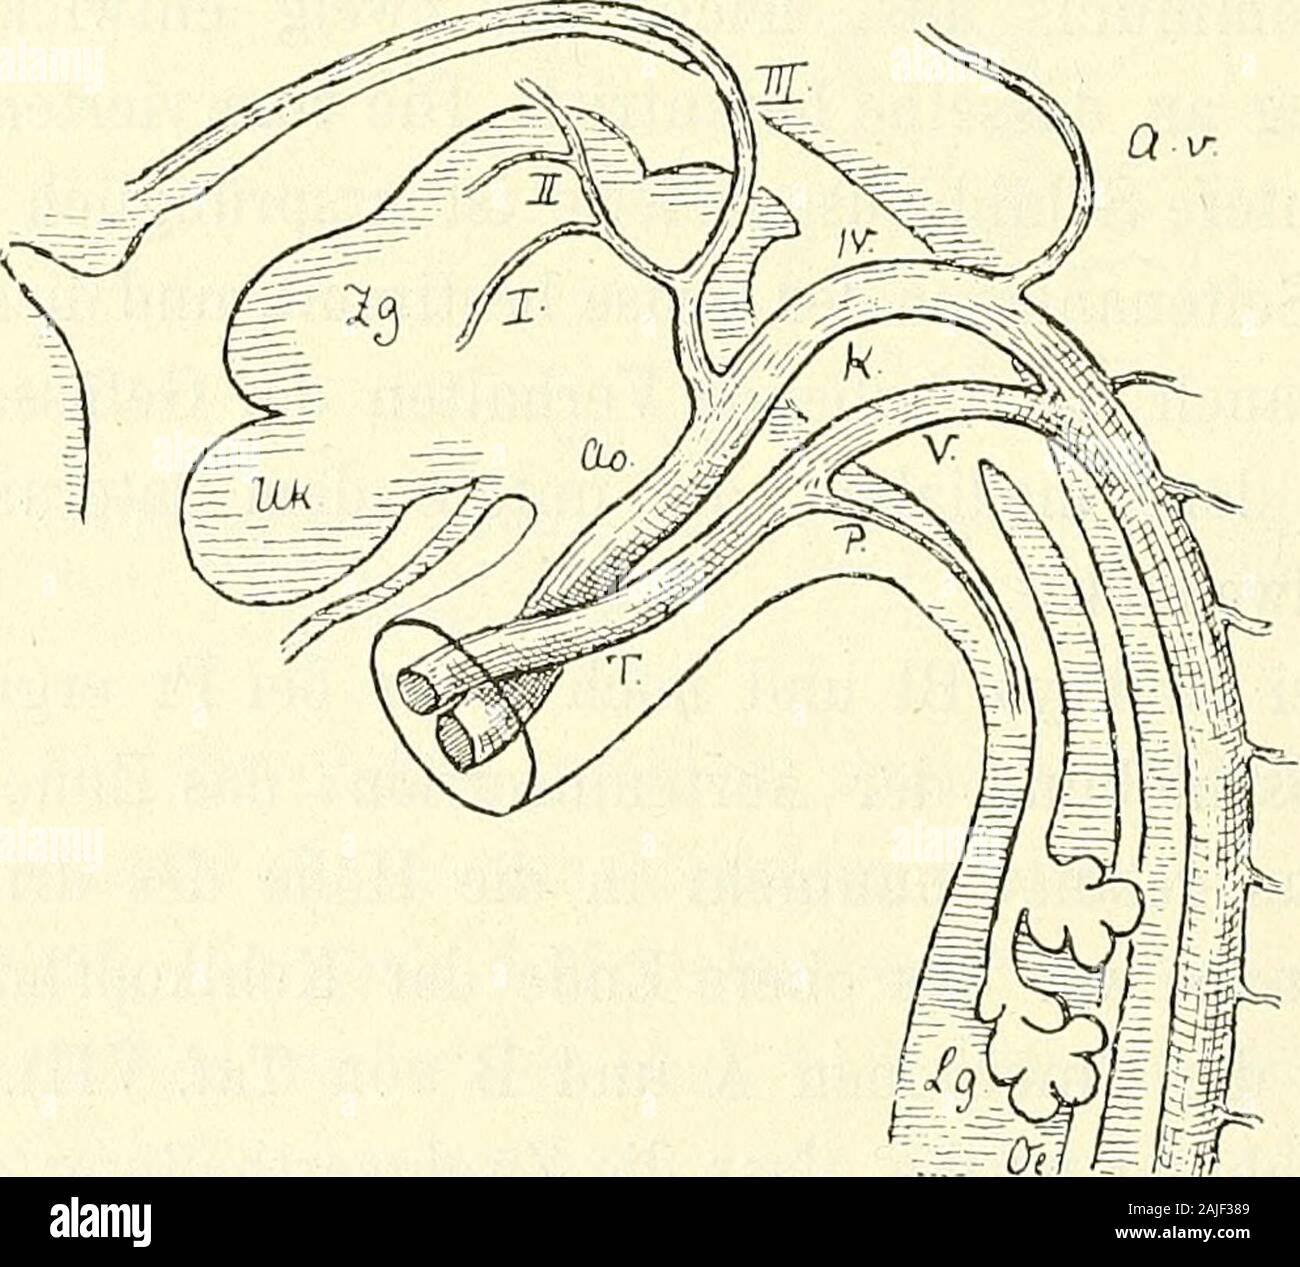 Anatomie menschlicher Embryonen . Fig. 123. Aortensystem vom Embryo S 1. Vergr. 18. Von diesem zuletzt betrachteten Zeitpunkt ab entwickelt sichdie Scheidung der beiden Strombahnen des Aortentruncus. Indemdas Septum vom Insertionsende aus gegen das Herz hin vorrückt,. Fig. 124. Aortensystem vom Embryo Kg. Constr. Vergr. 18. Bezeichnungen wie oben.R. T KATHKEsche Tasche, Ul- Unterkiefer, Zg Zunge, A.v Art. vertebralis. trennt dasselbe die Bahn, die mit dem linken Herzen, von der, diemit dem rechten zusammenhängt. An der Insertionsstelle des Truncusliegt jene Bahn höher als diese, und so ergiebt Stock Photo